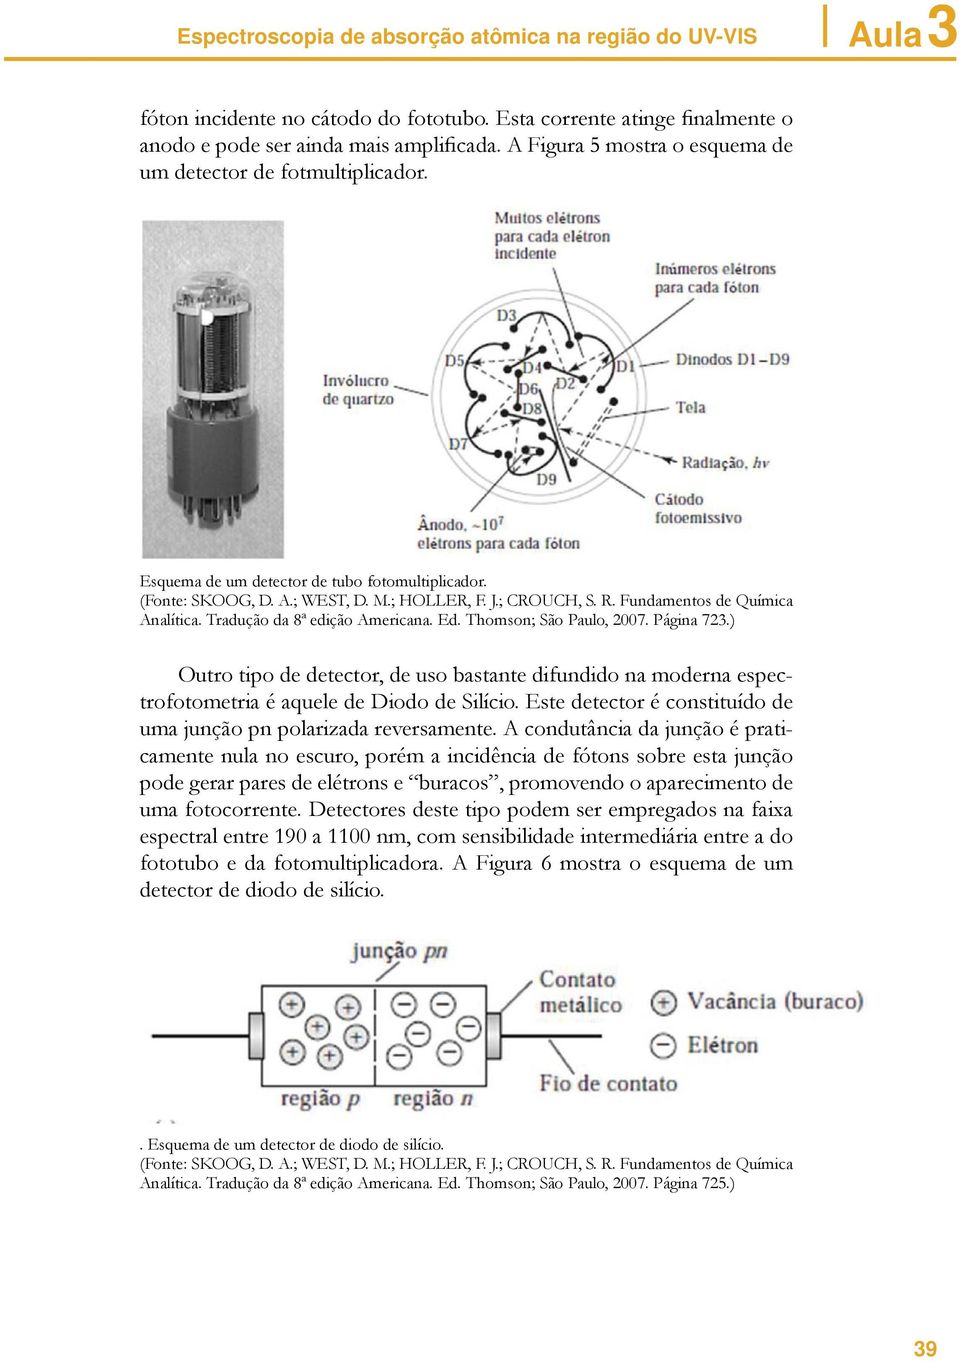 Fundamentos de Química Analítica. Tradução da 8ª edição Americana. Ed. Thomson; São Paulo, 2007. Página 723.